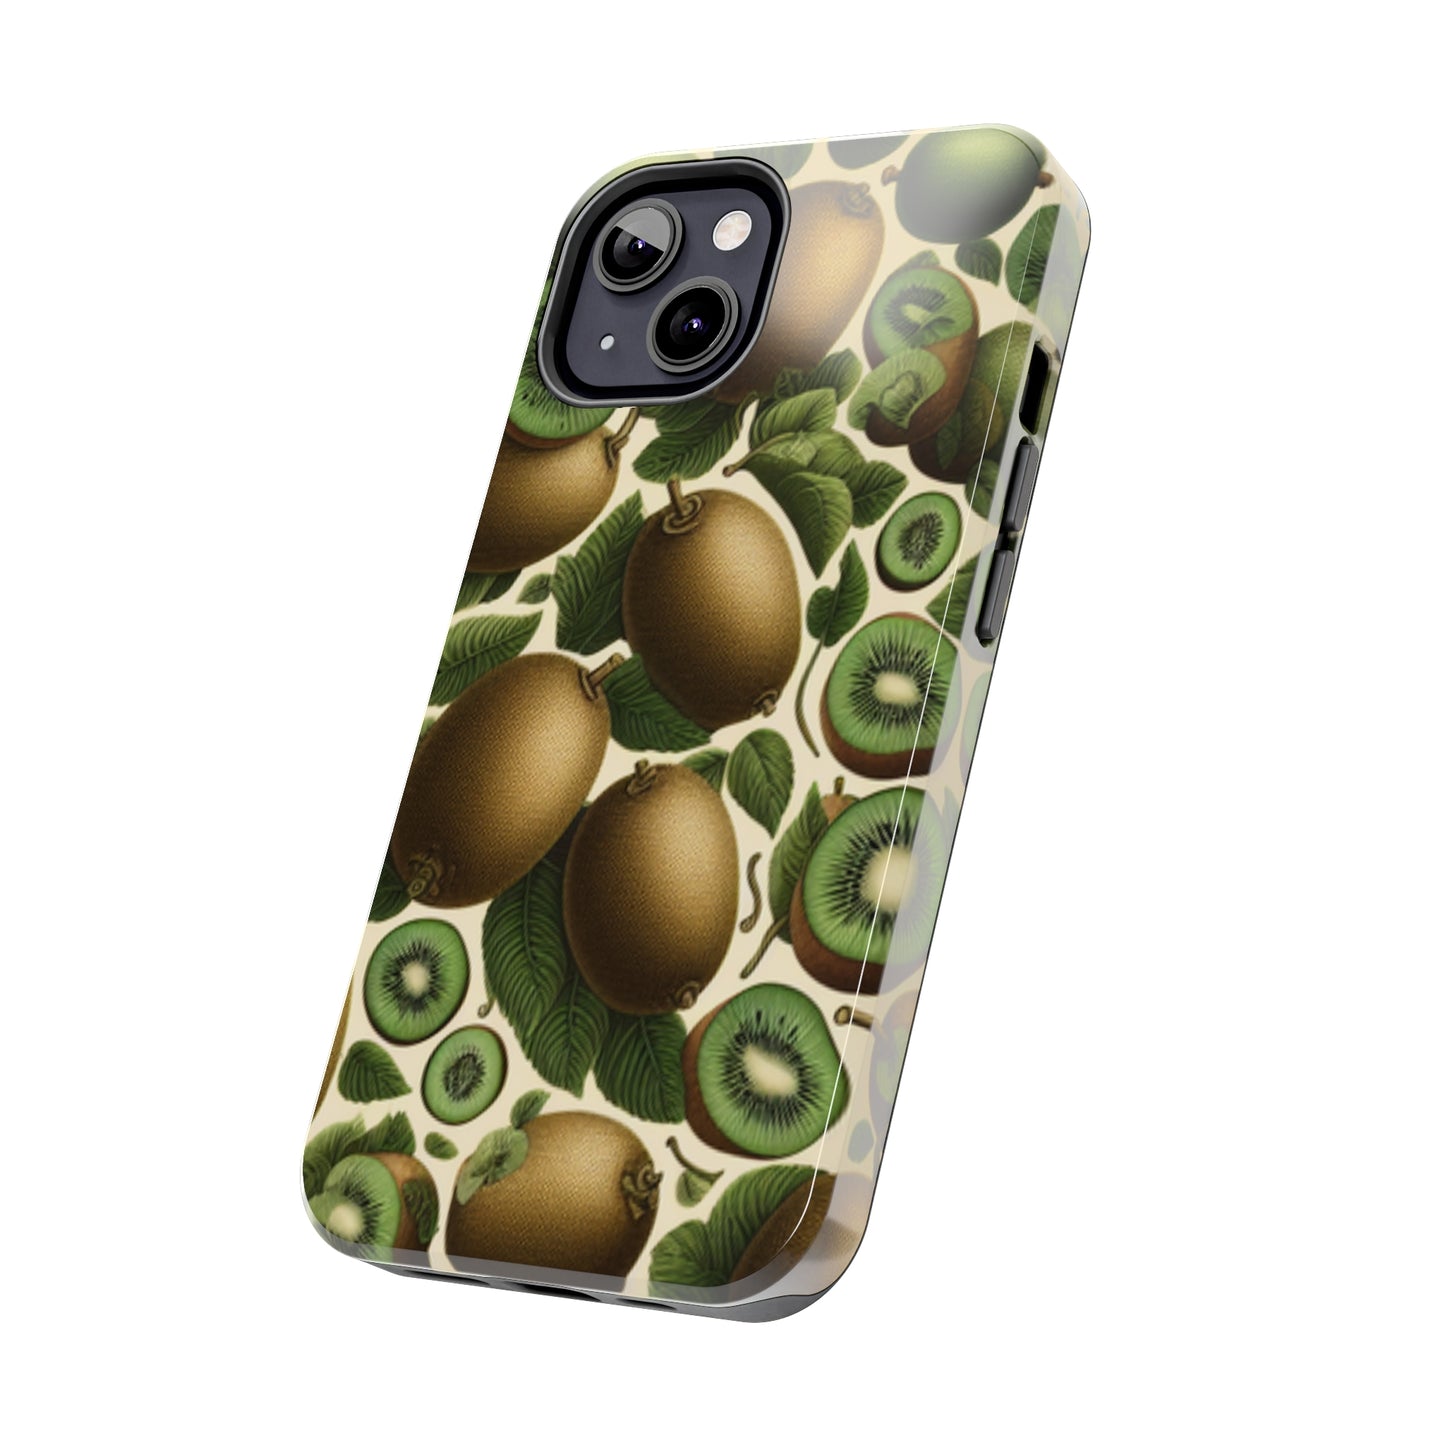 kiwi phone case